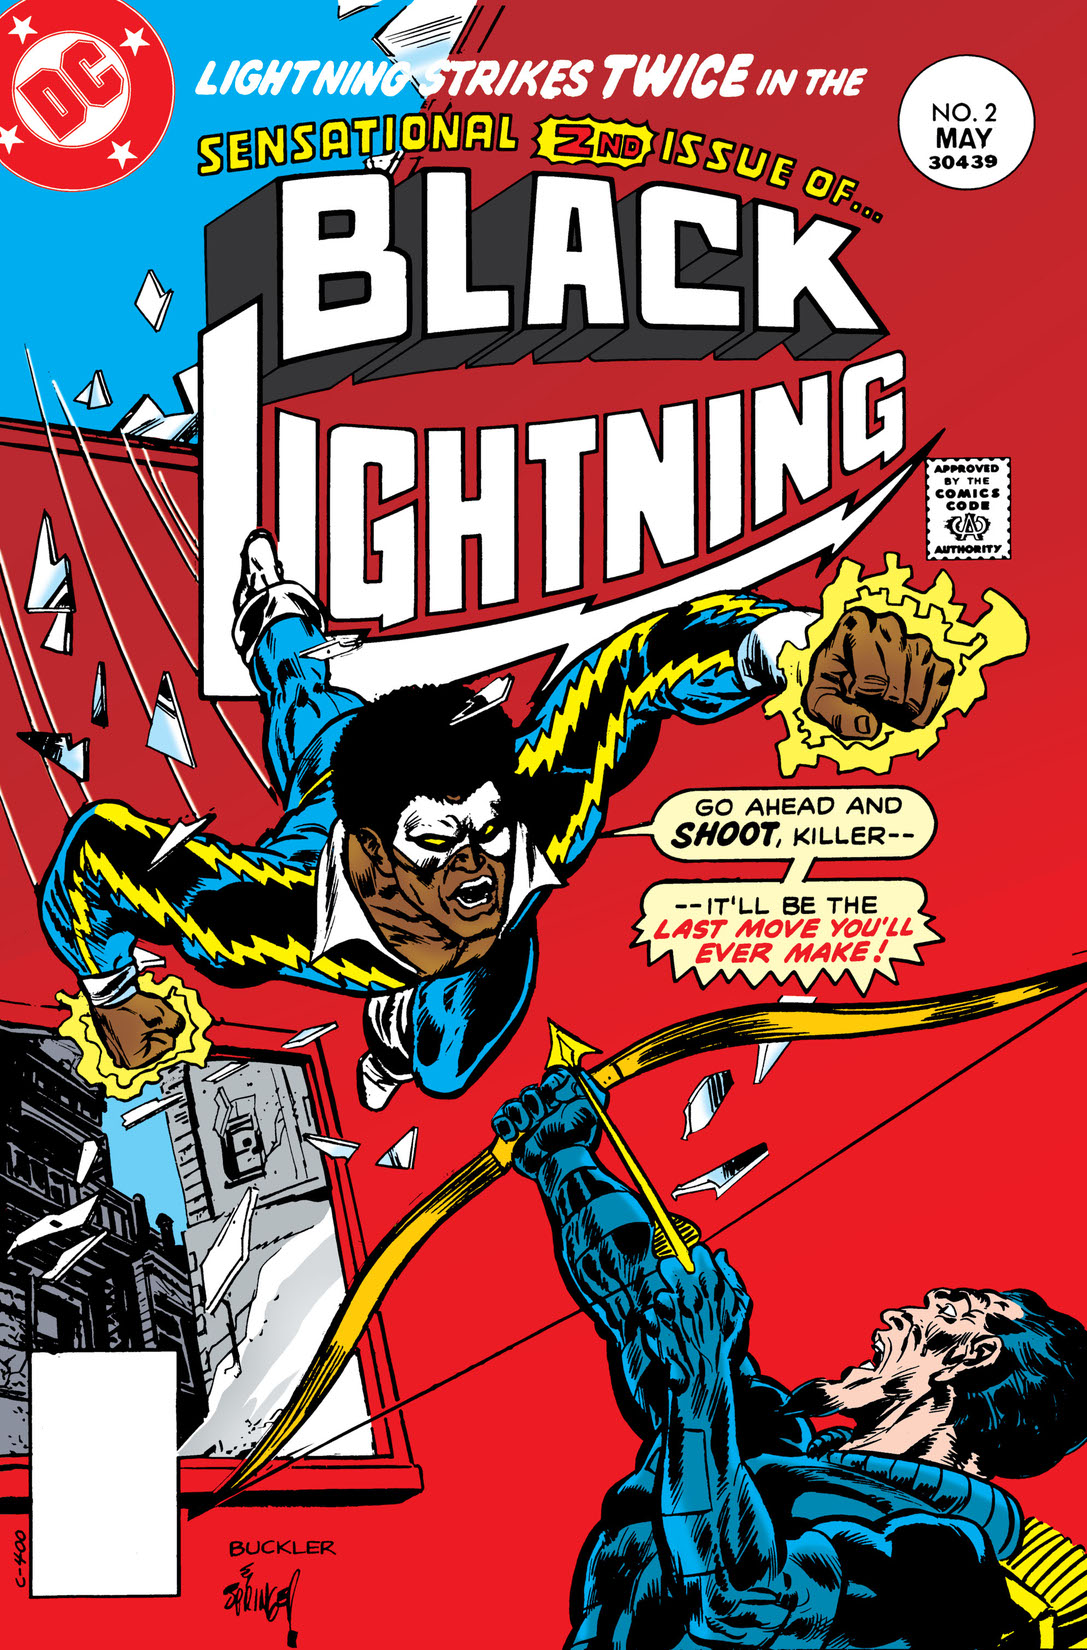 Black Lightning (1977-) #2 preview images